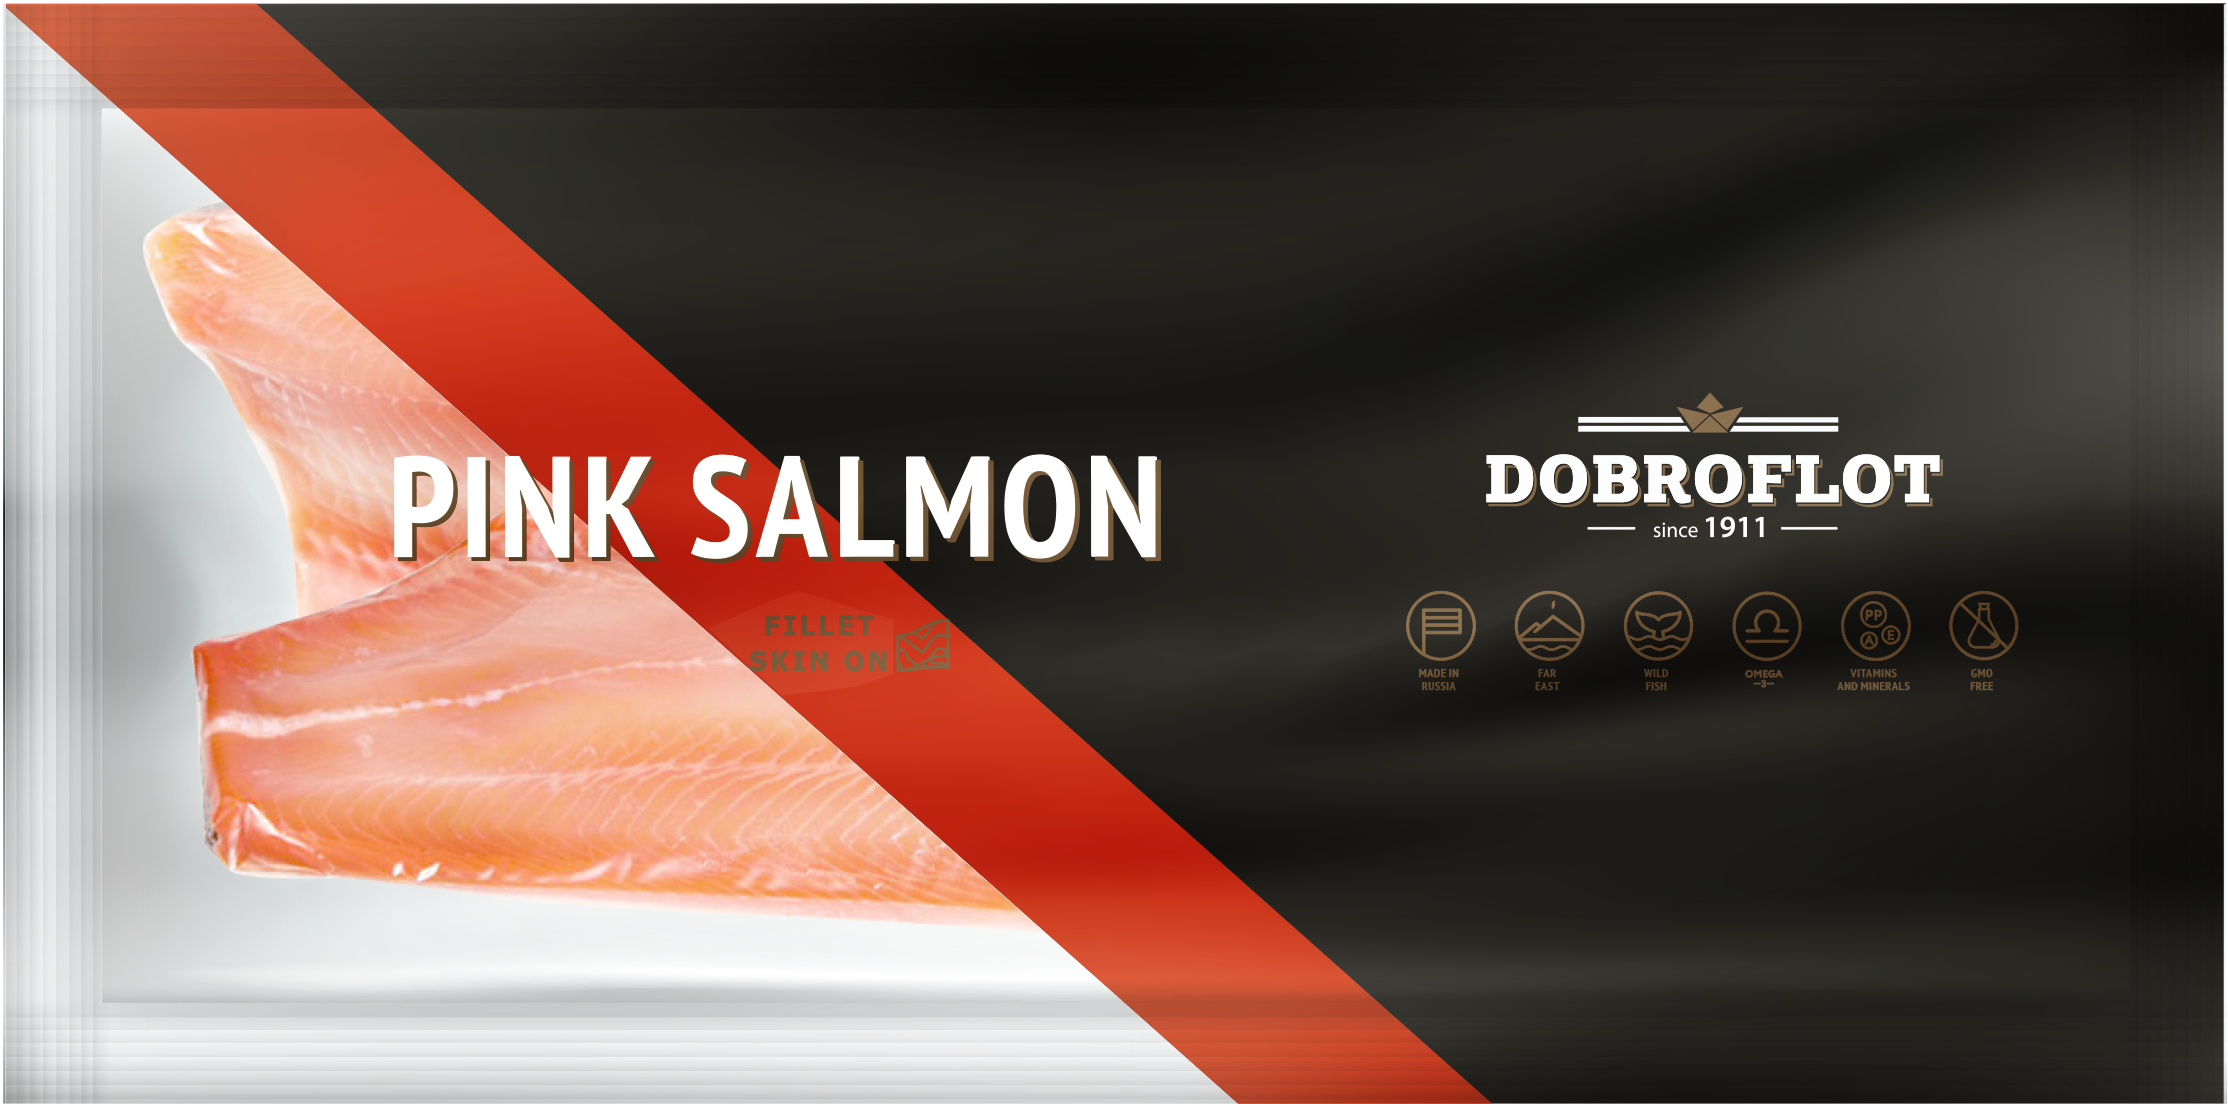 Pink Salmon fillet skin on 